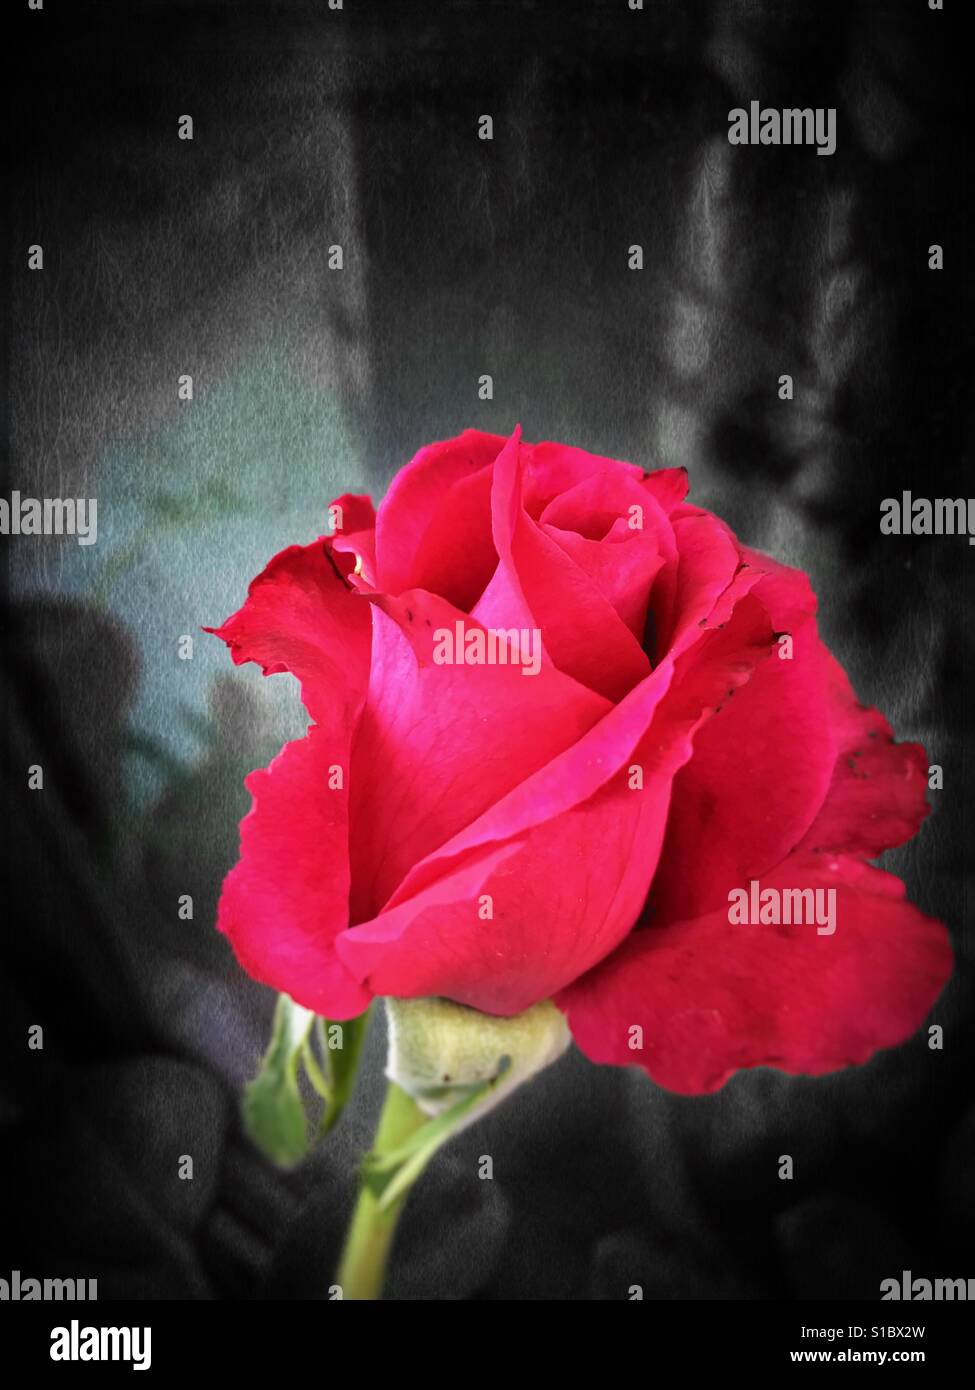 Beobachten Sie die Blütenblätter fallen aus der Rose mit Traurigkeit, wissen, wie das Leben, Dinge manchmal verblassen müssen, bevor sie wieder blühen können nicht. Stockfoto